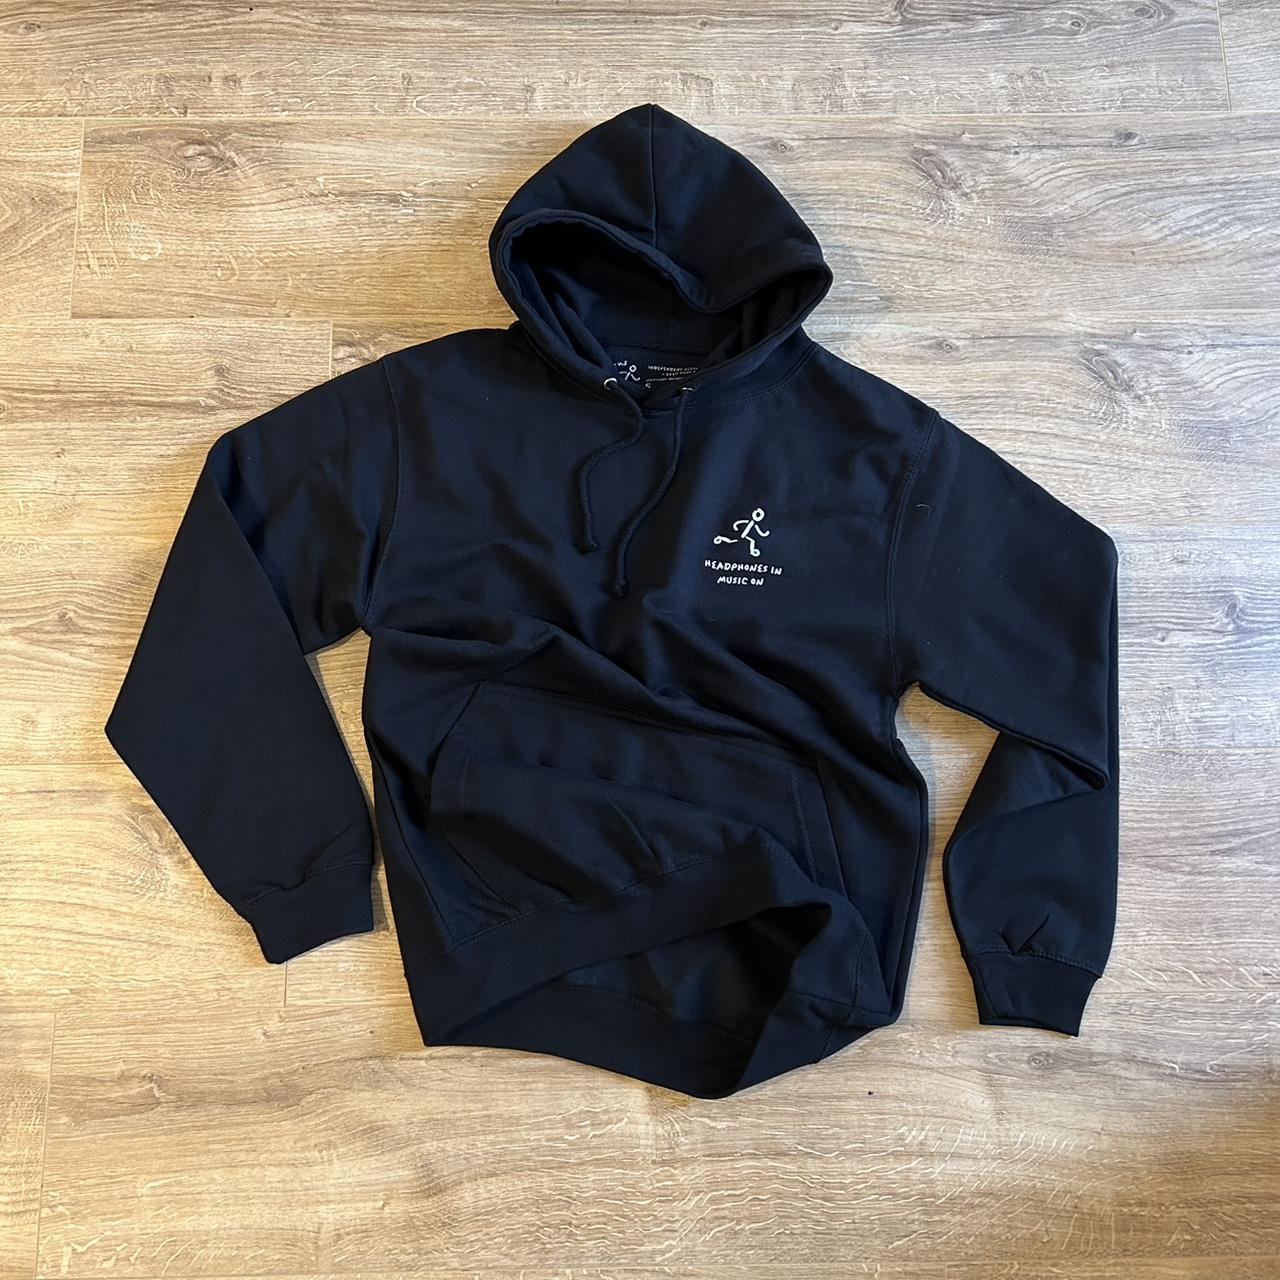 ALTUS - bespoke limited edition hoodie. Black, in... - Depop